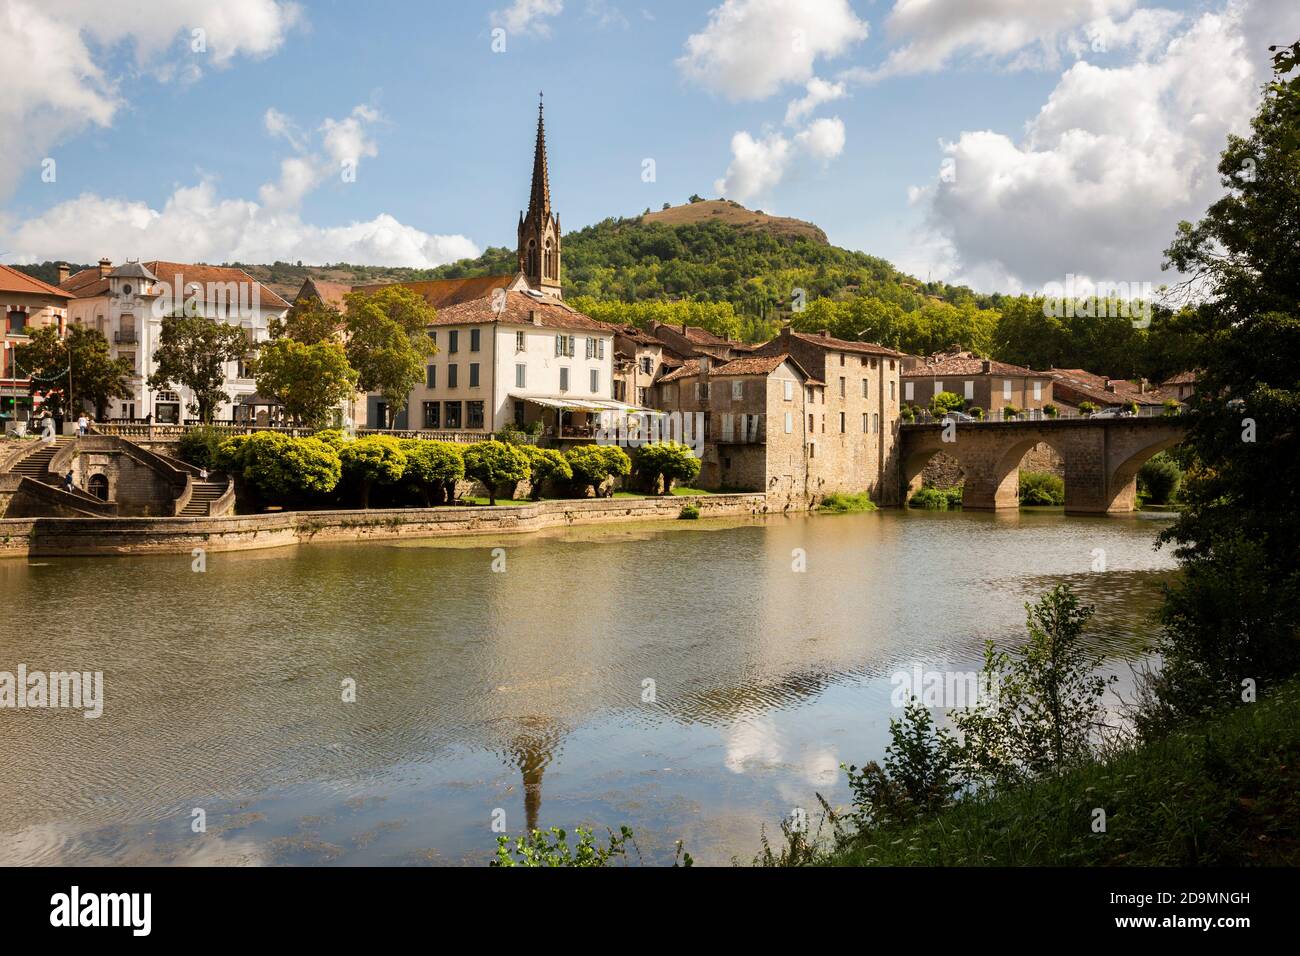 St. Antonin Noble Val ist eine charmante, kleine mittelalterliche Stadt am Fluss Aveyron im Departement Tarn et Garonne in Südfrankreich. Stockfoto